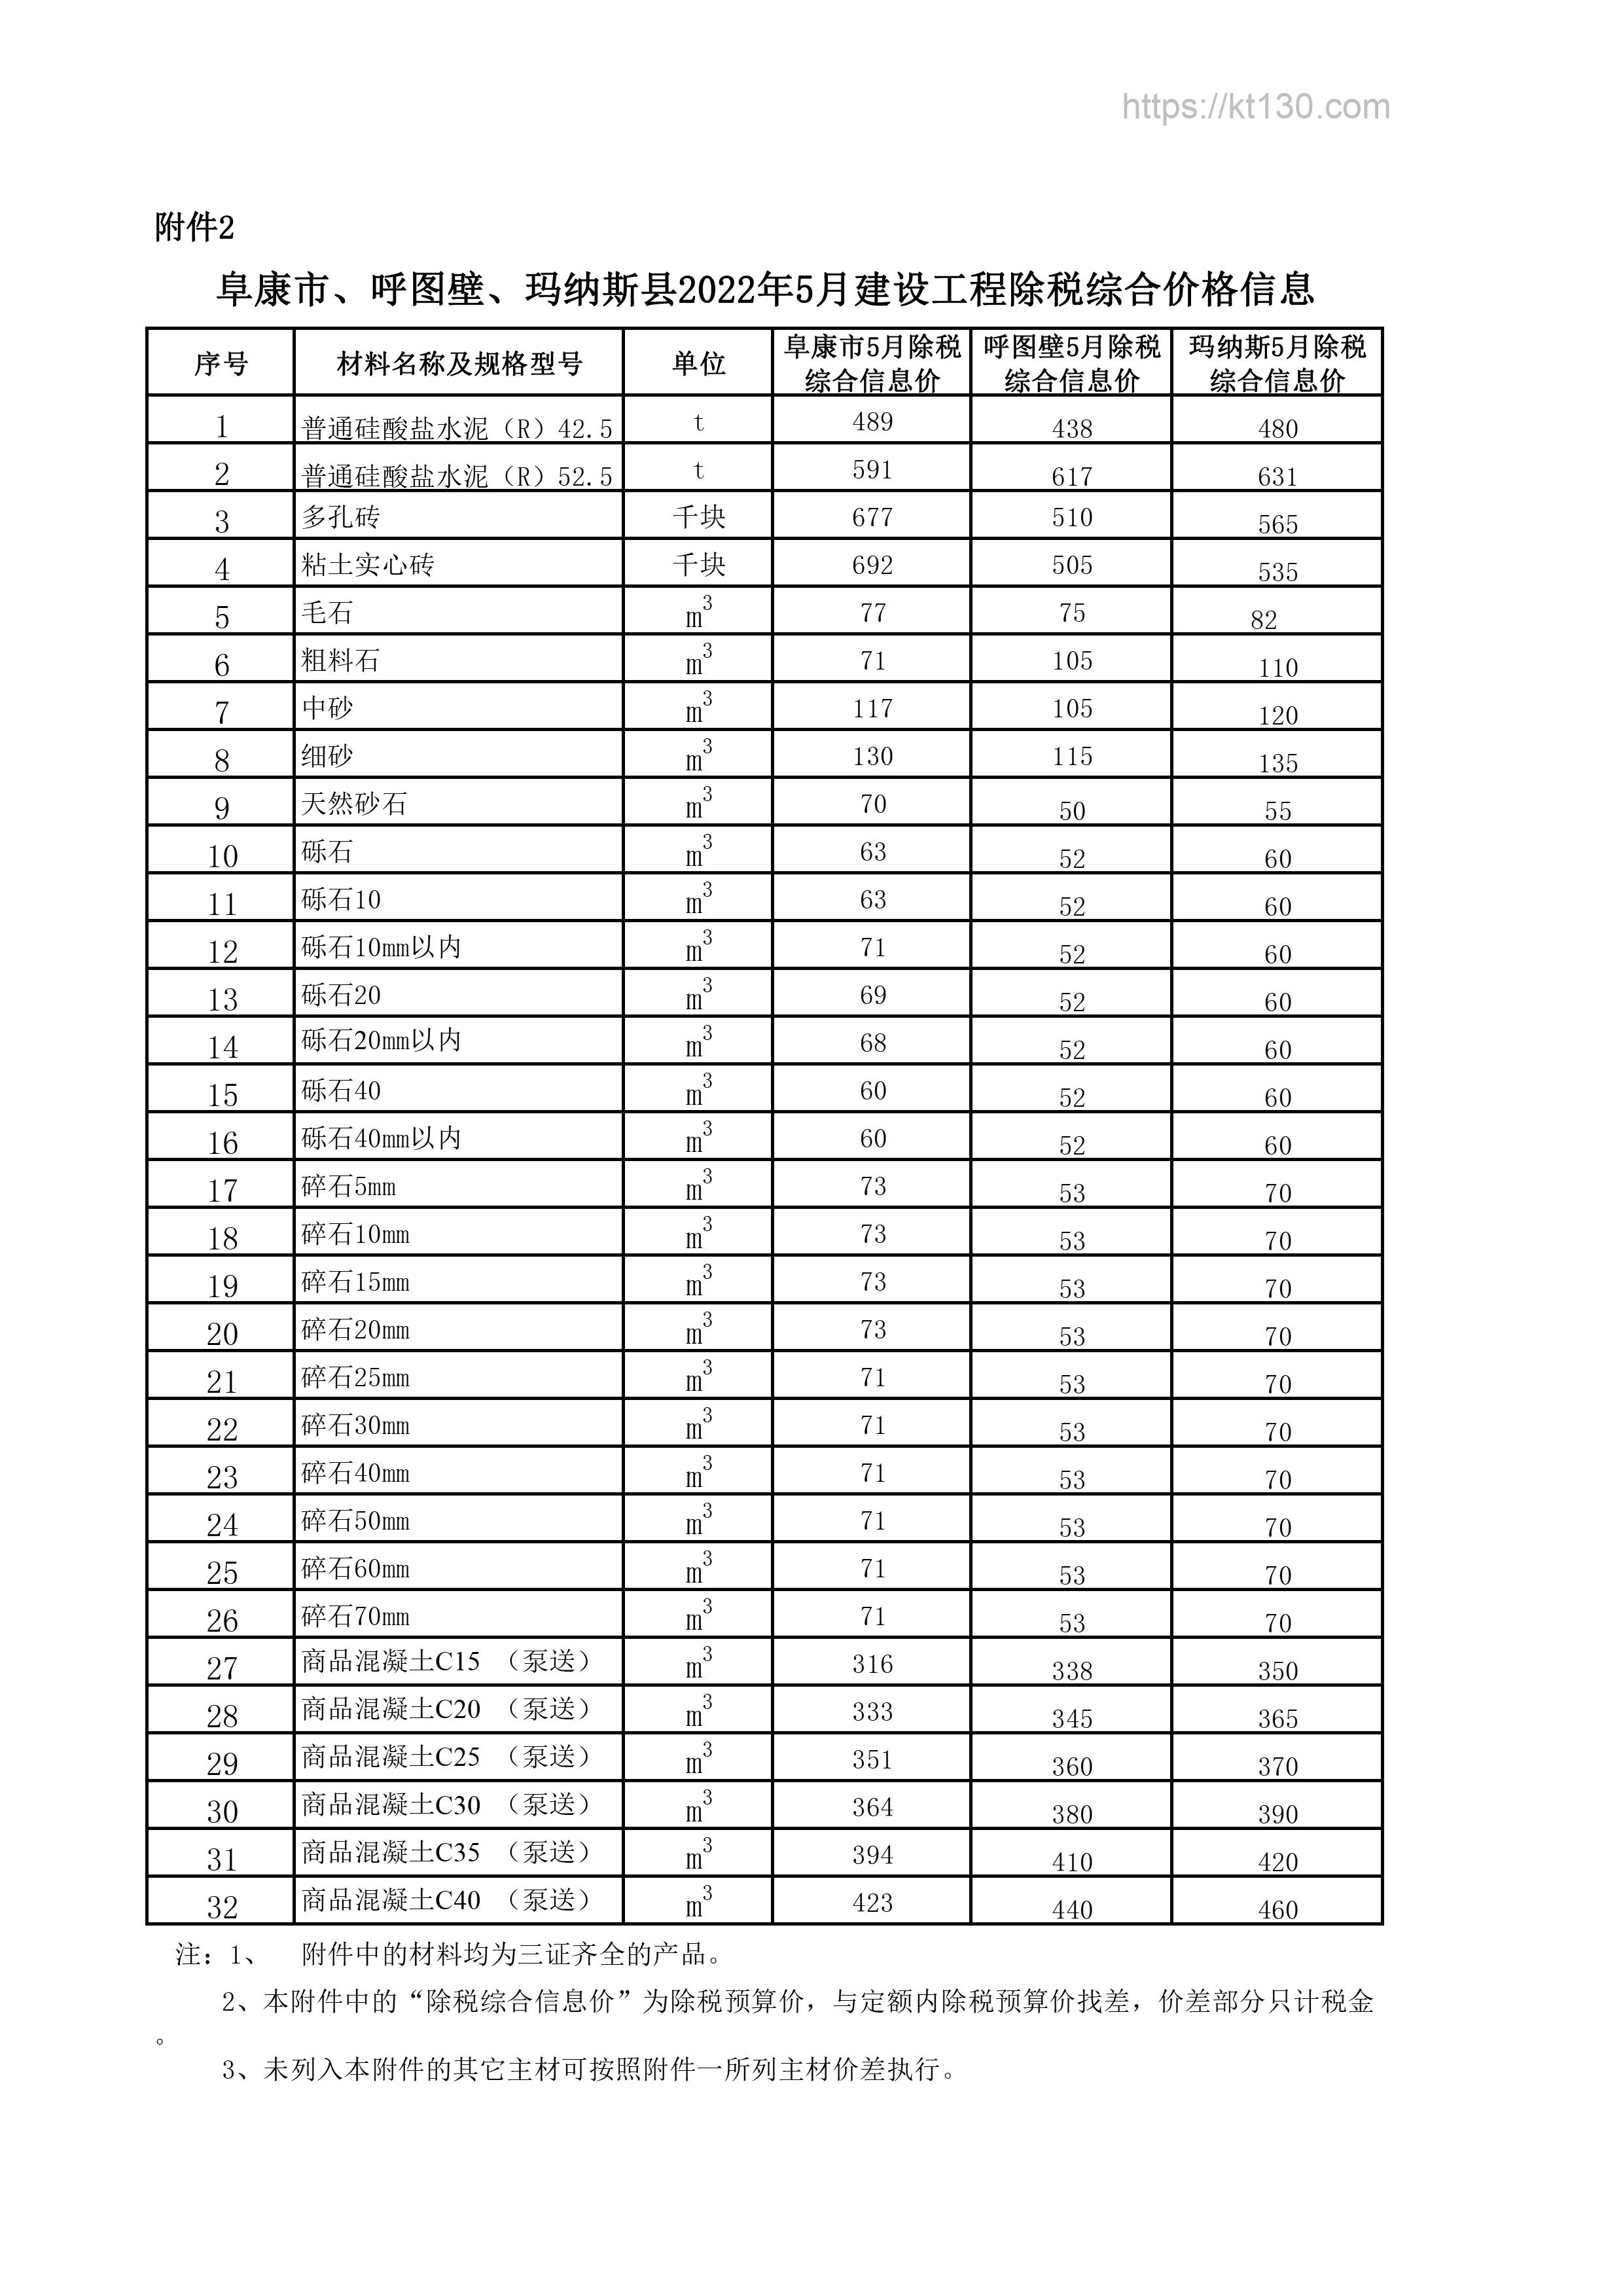 新疆昌吉州2022年5月份水电油指导价